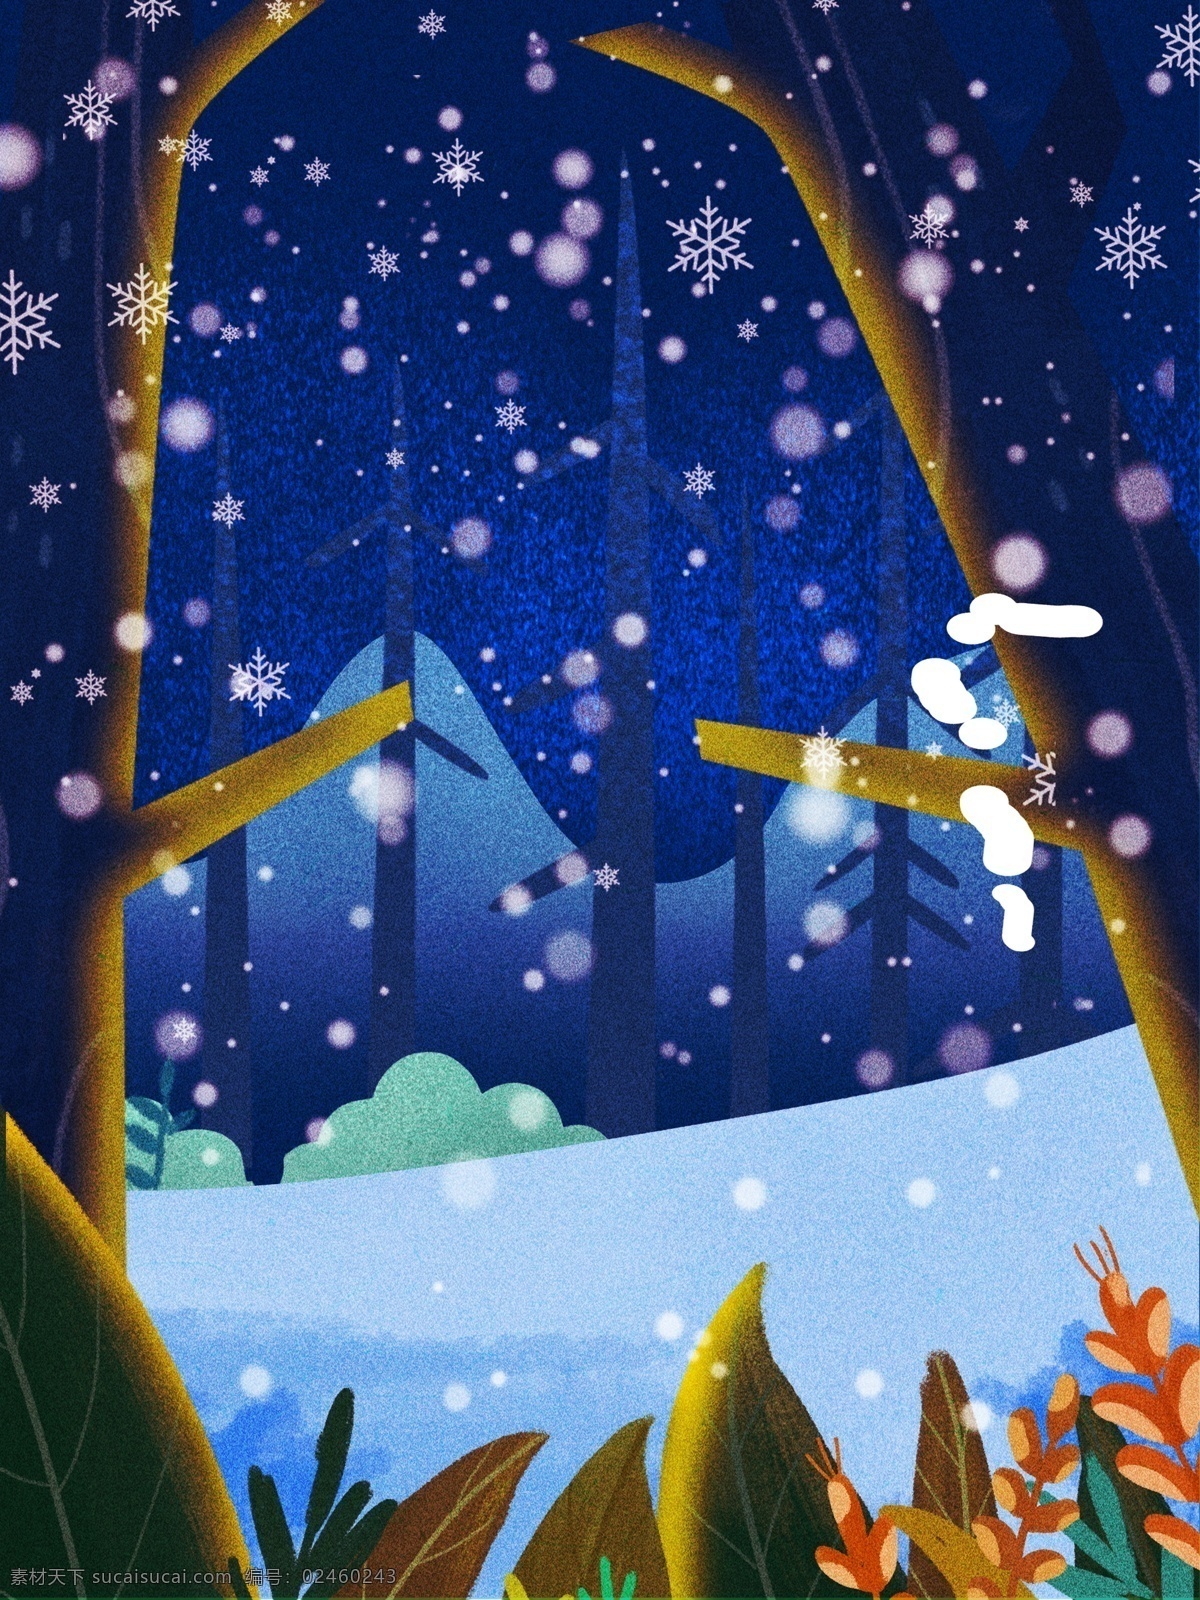 卡通 冬至 节气 雪景 背景 冬天 唯美 雪地 树木 背景设计 彩绘背景 大寒背景